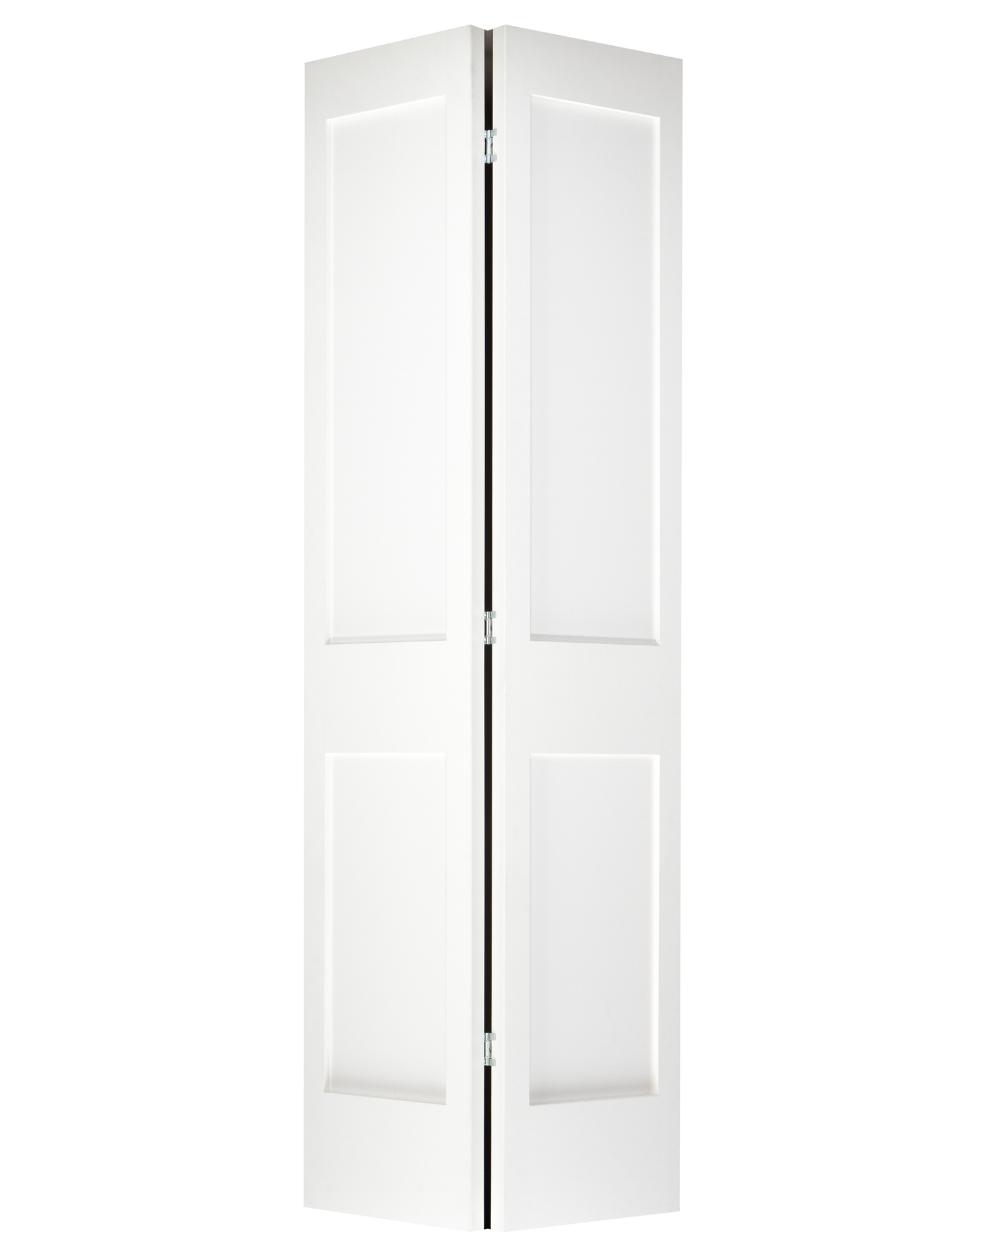 2 Panel Shaker Style Bifold Door (Primed)